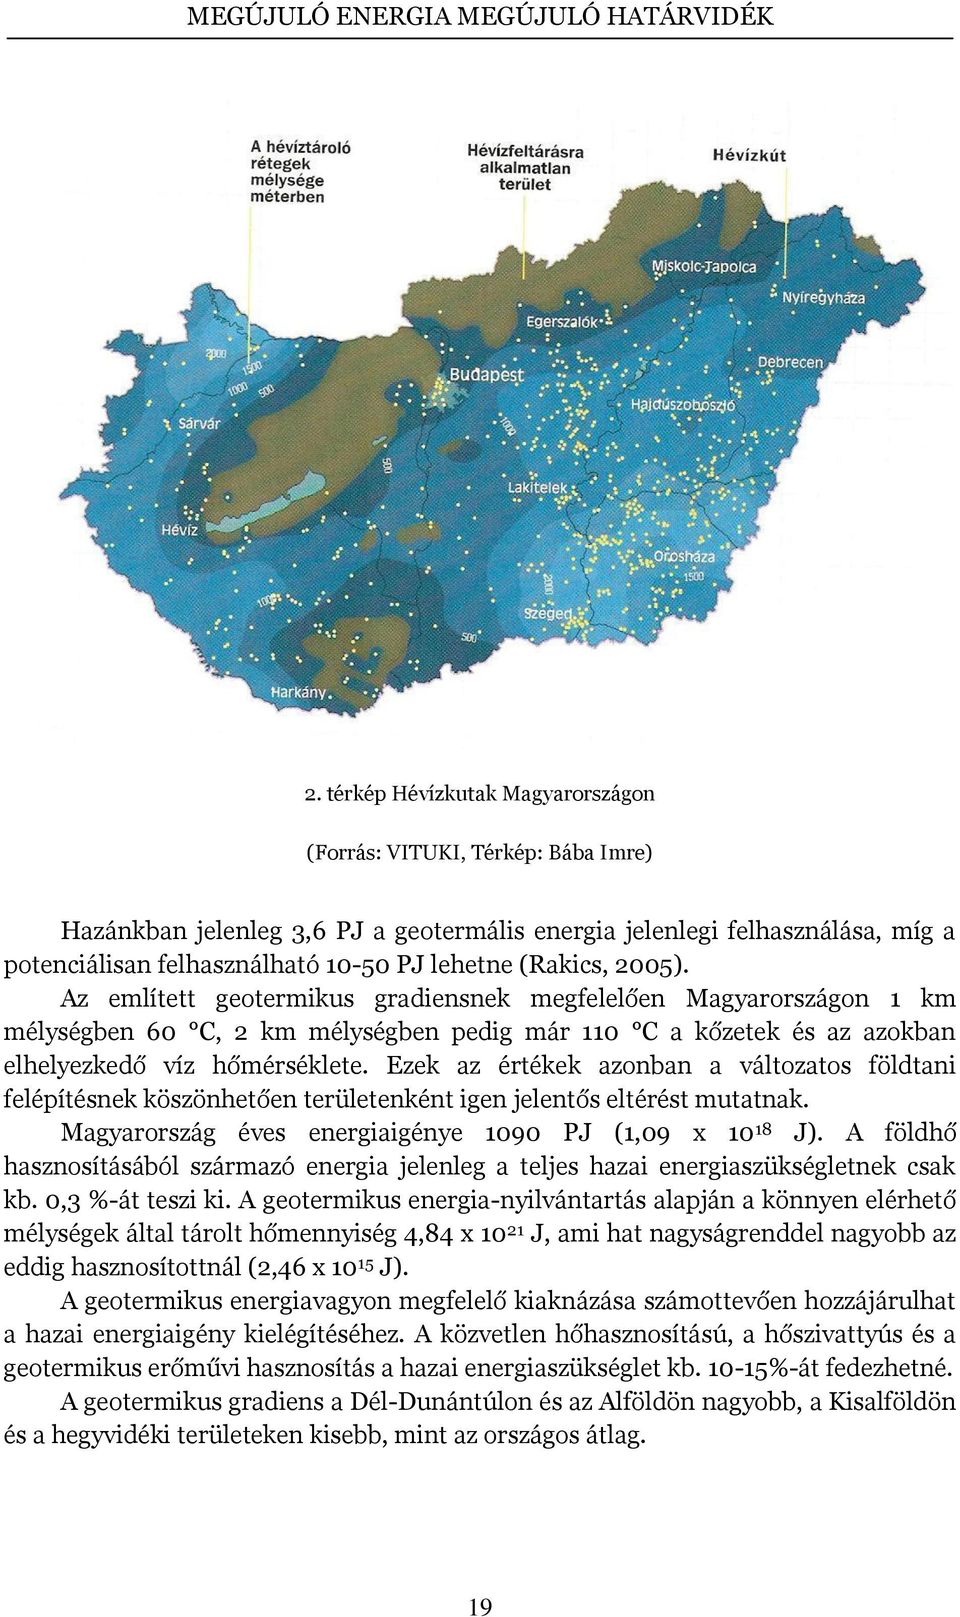 Ezek az értékek azonban a változatos földtani felépítésnek köszönhetően területenként igen jelentős eltérést mutatnak. Magyarország éves energiaigénye 1090 PJ (1,09 x 10 18 J).